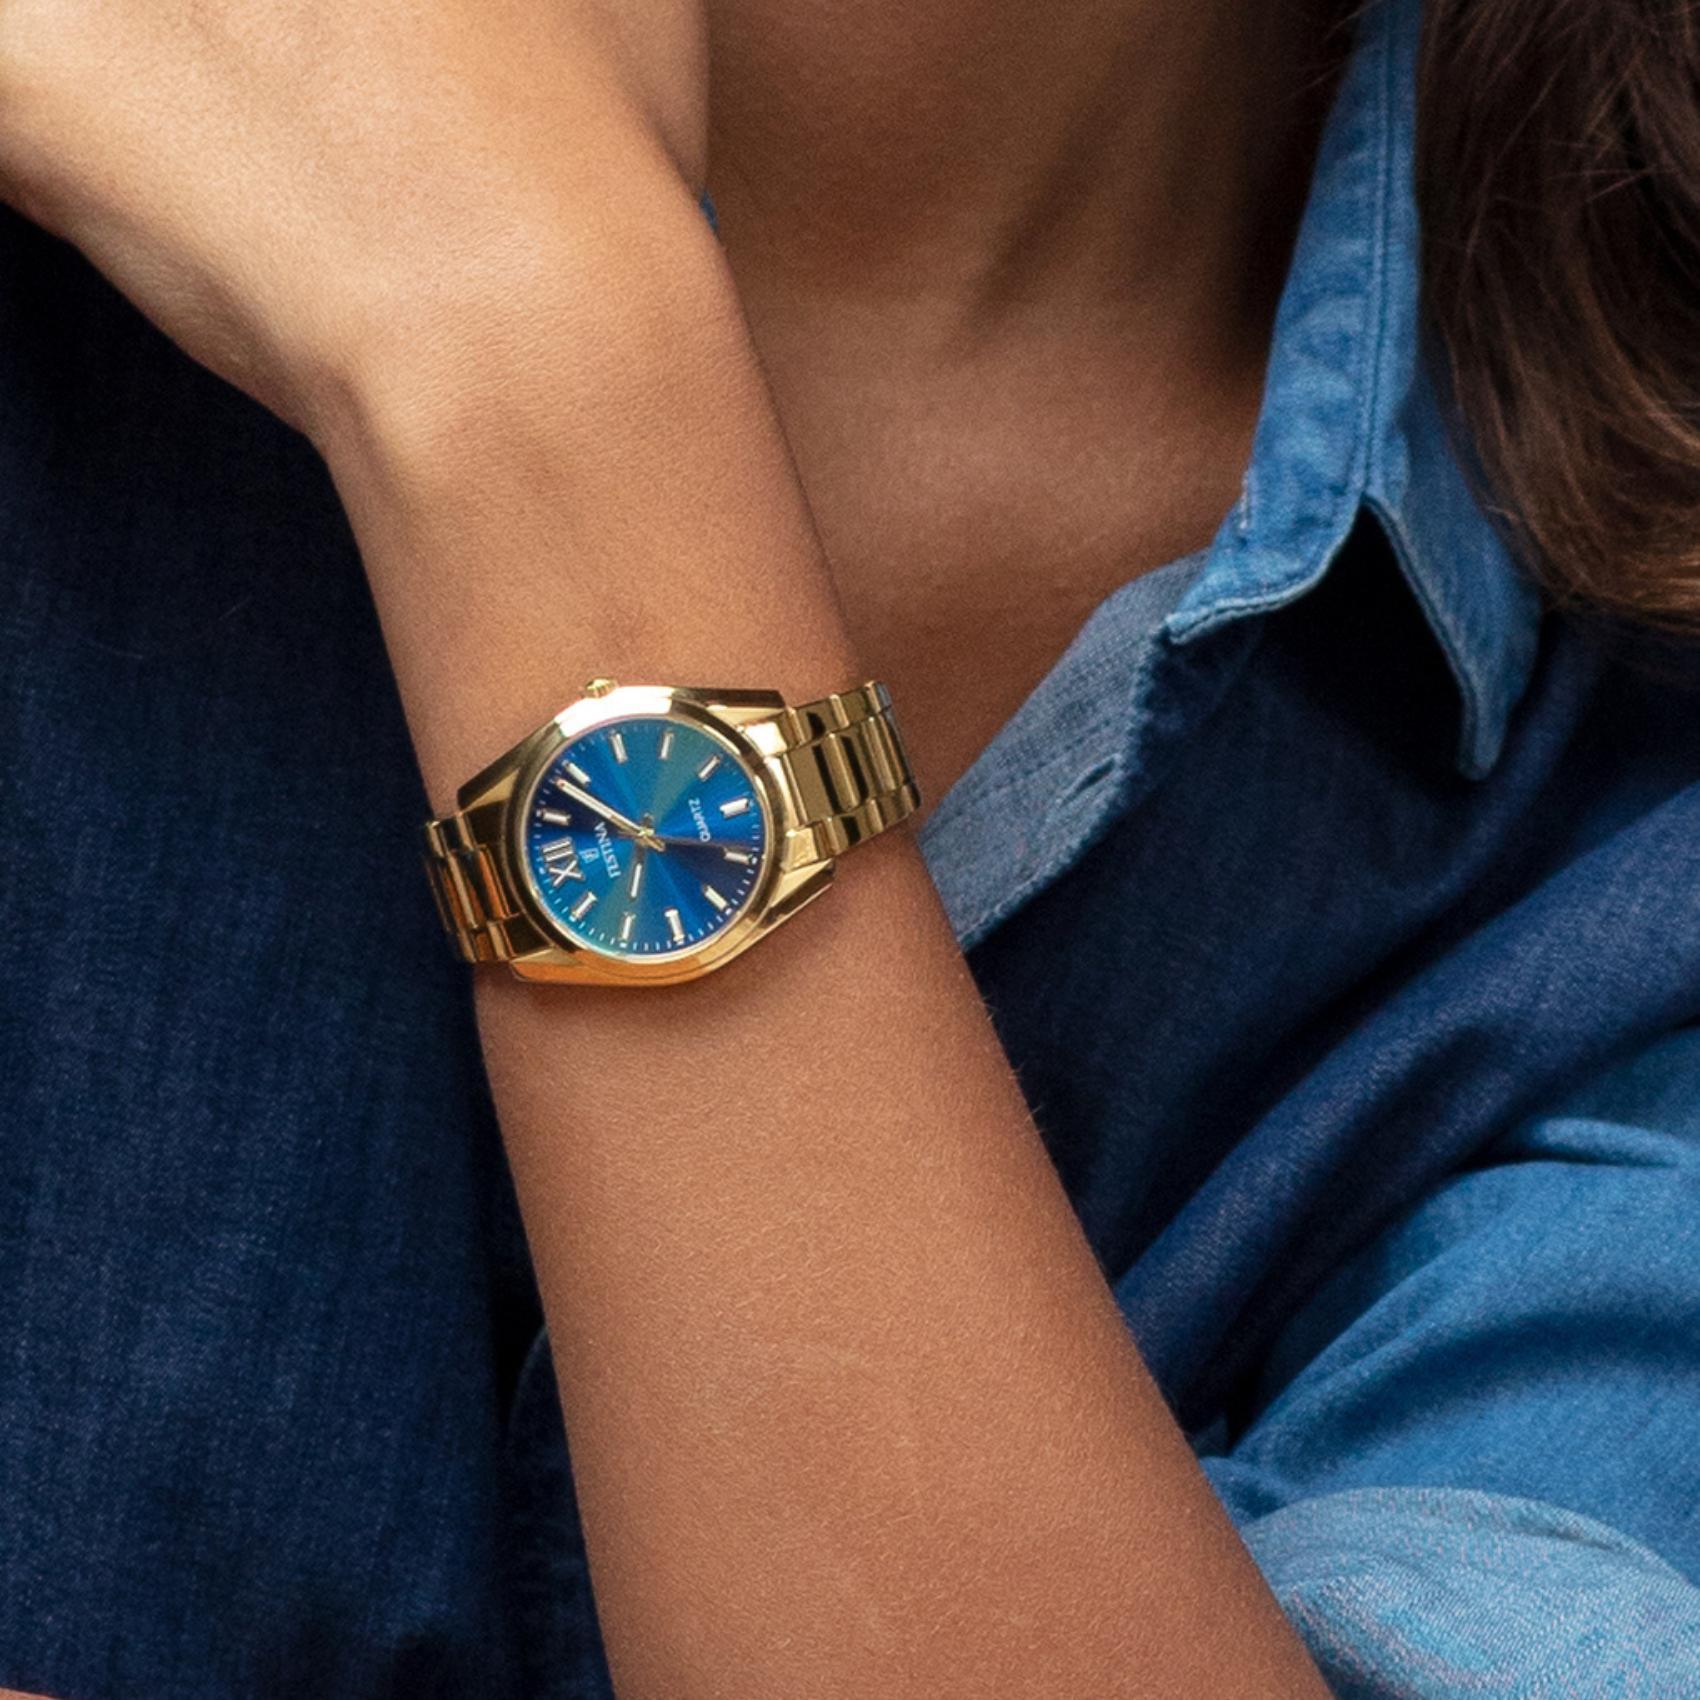 Γυναικείο ρολόι Festina Alegria F20640/8 με χρυσό ατσάλινο μπρασελέ, μπλε καντραν, μηχανισμό μπαταρίας στρογγυλό στεφάνι με διάμετρο 37mm, αδιάβροχο στις 5ΑΤΜ-50Μ.